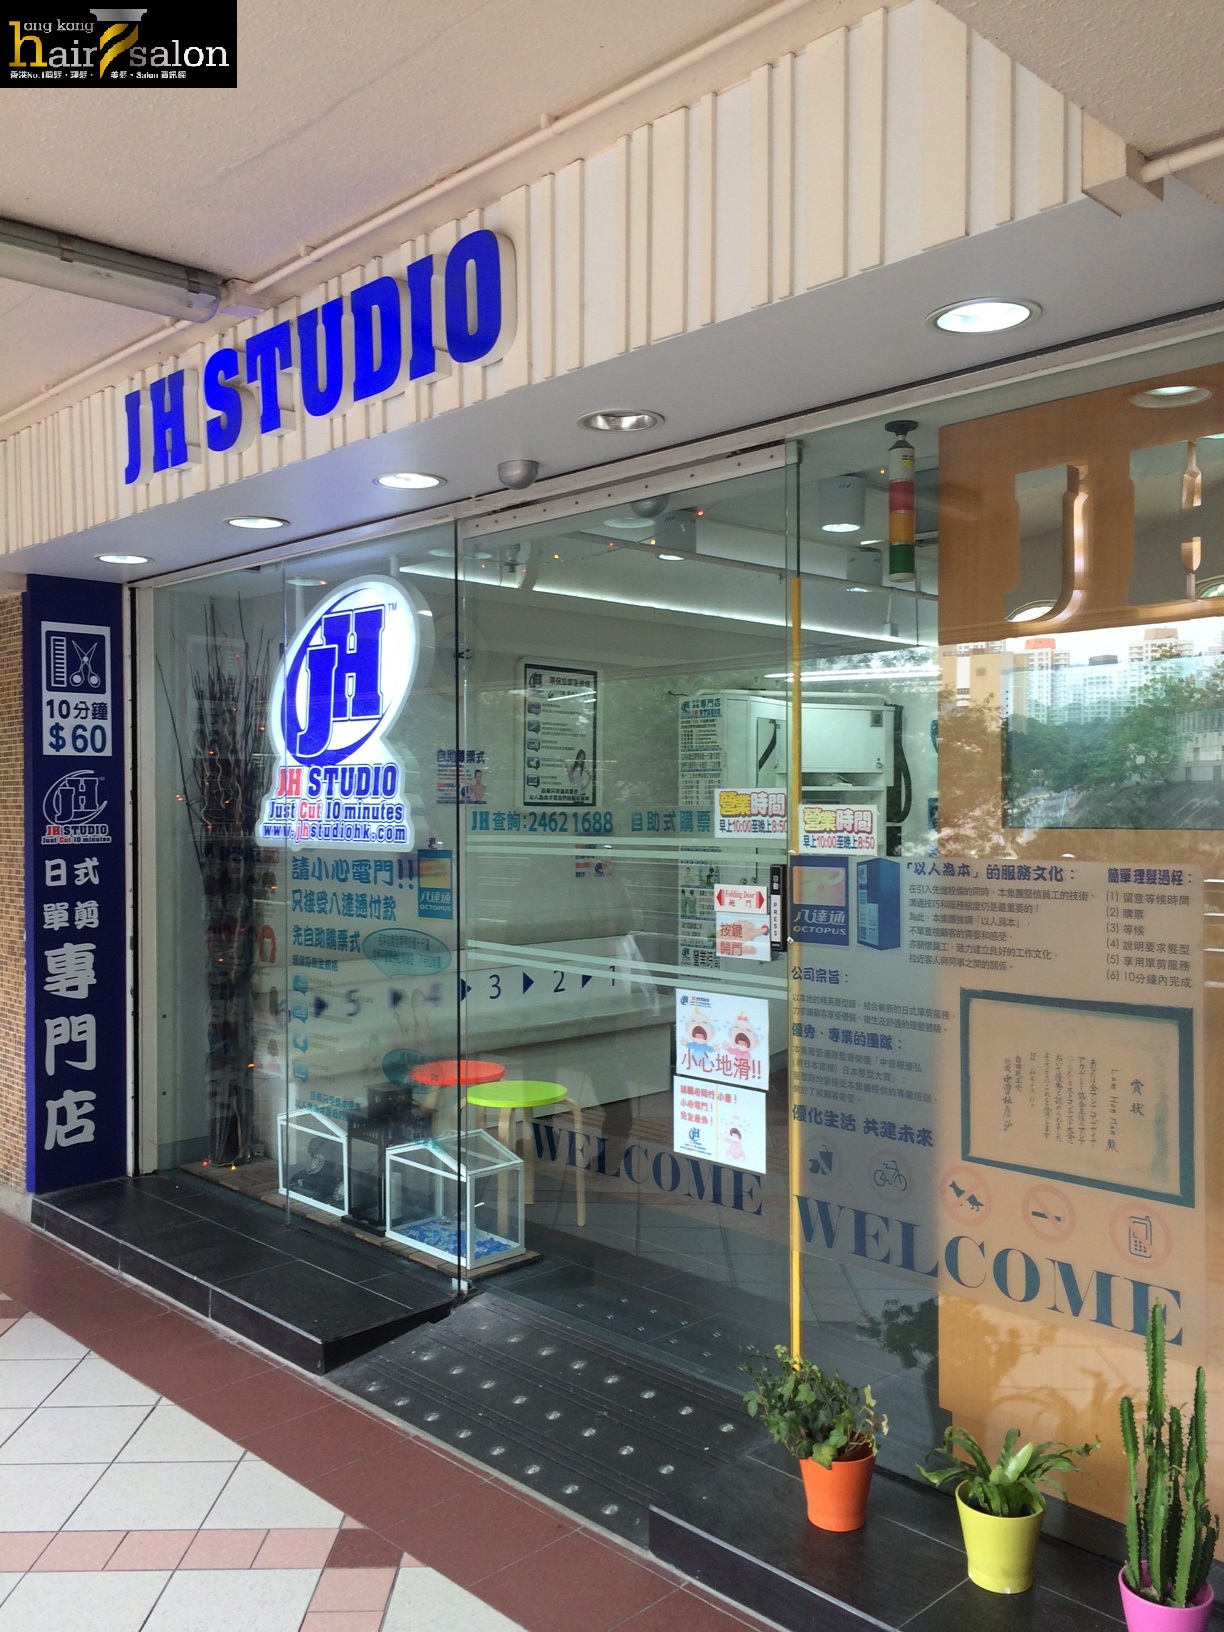 髮型屋: JH Studio